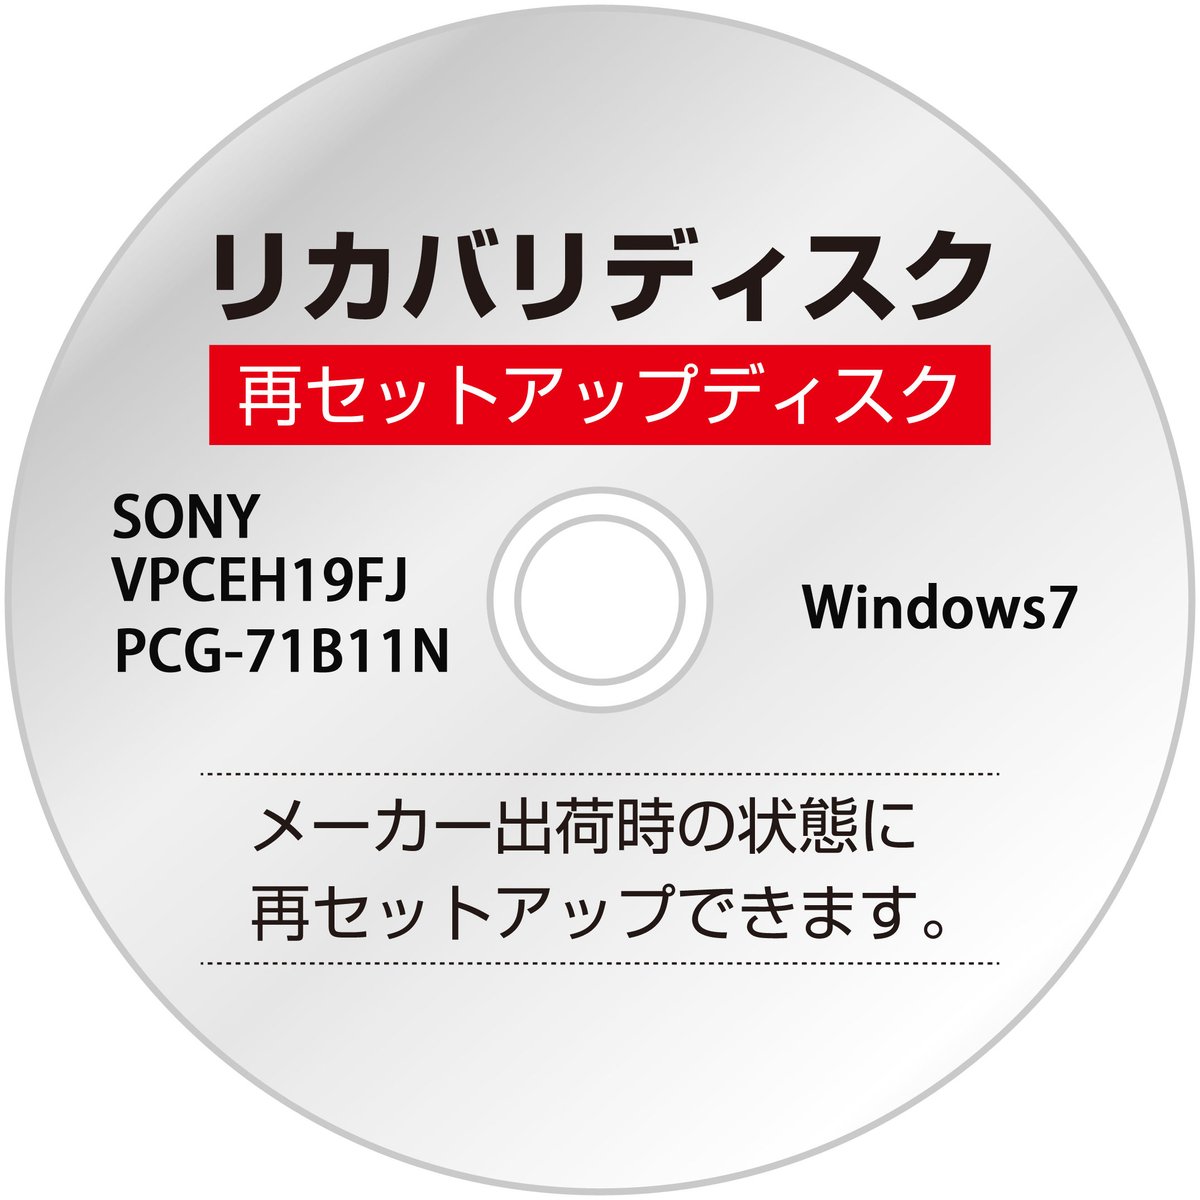 リカバリディスク】SONY VAIO VPCEH19FJ PCG-71B11N 【Win7】...